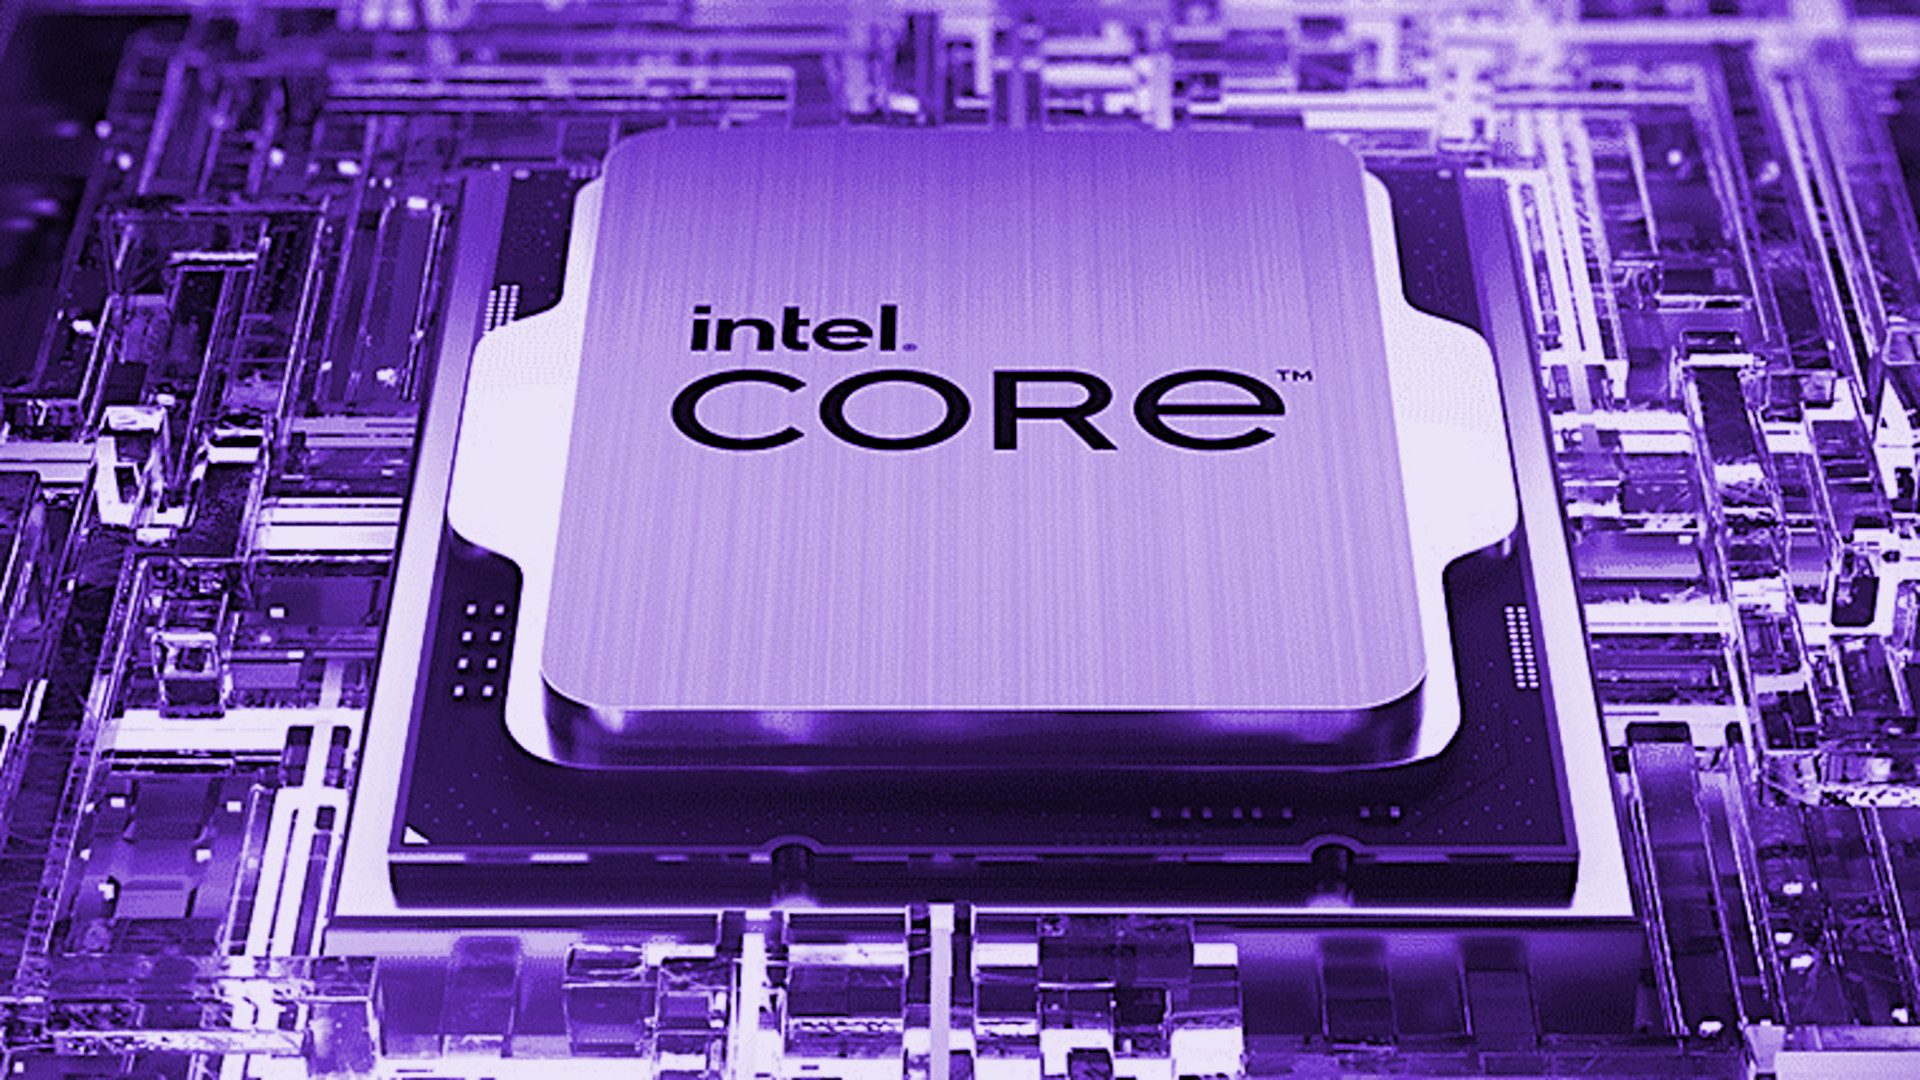 Intel Core i9 14900KS CPU launch may be just around the corner